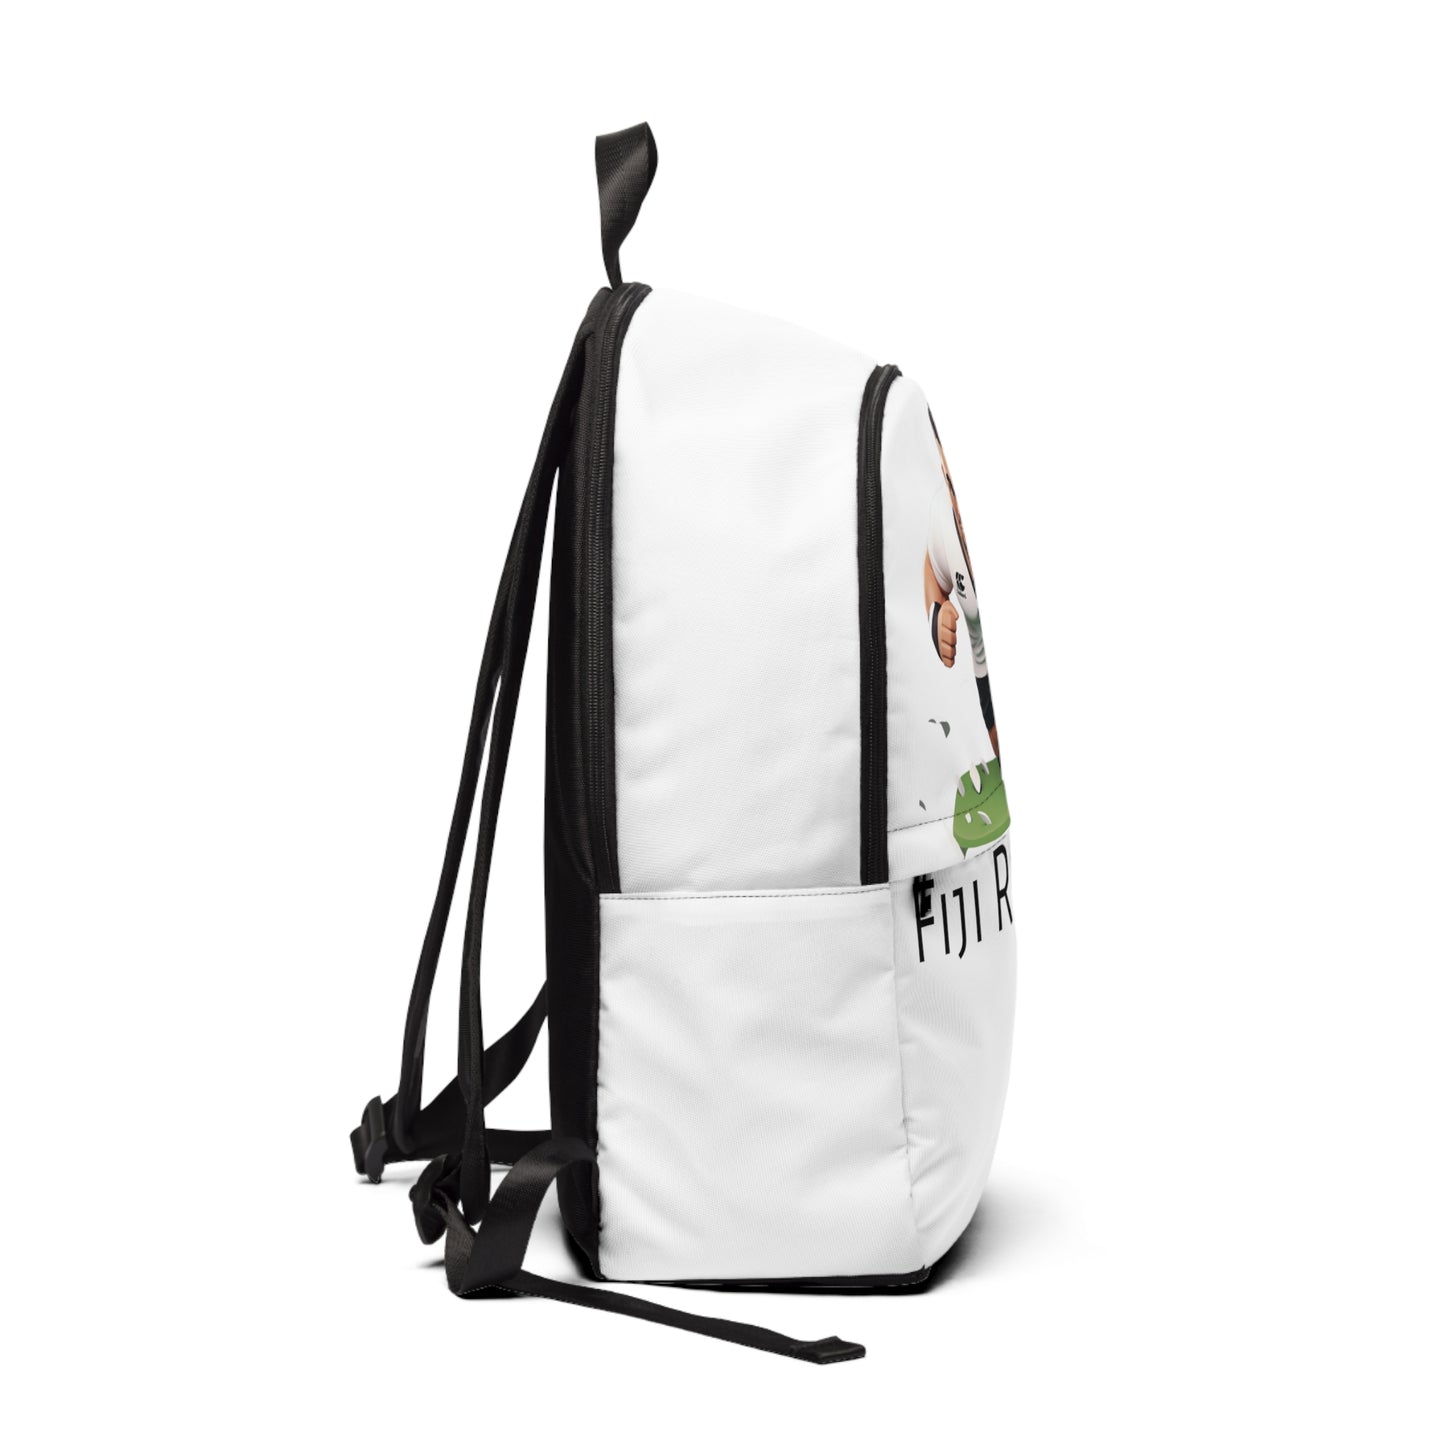 Fiji backpack